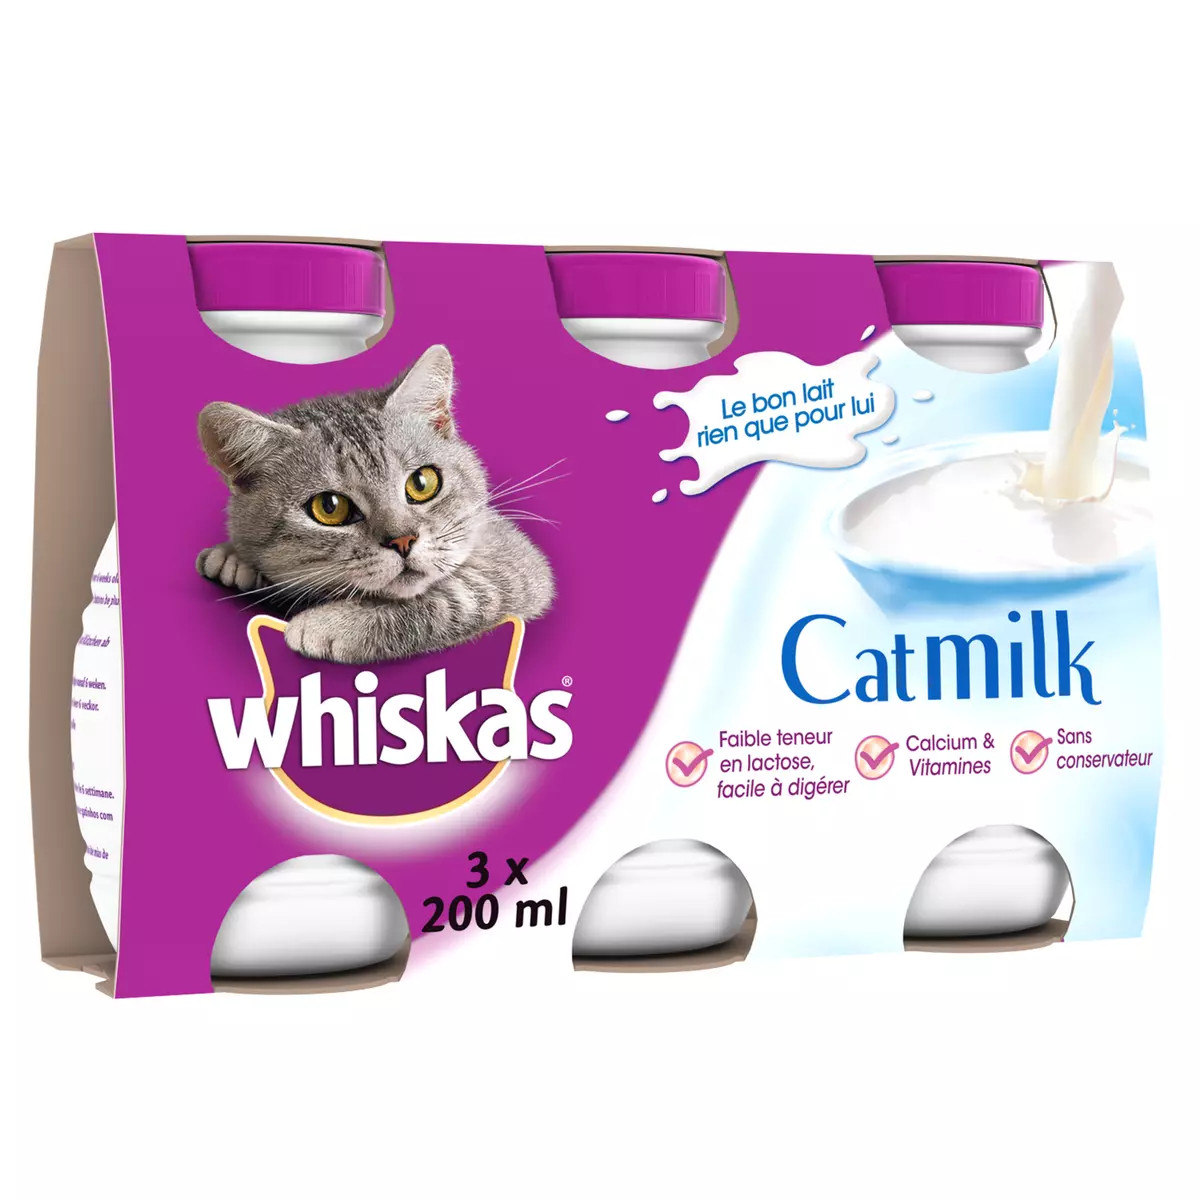 WHISKAS Cat milk bouteilles lait pour chat 3 bouteilles 3x200ml